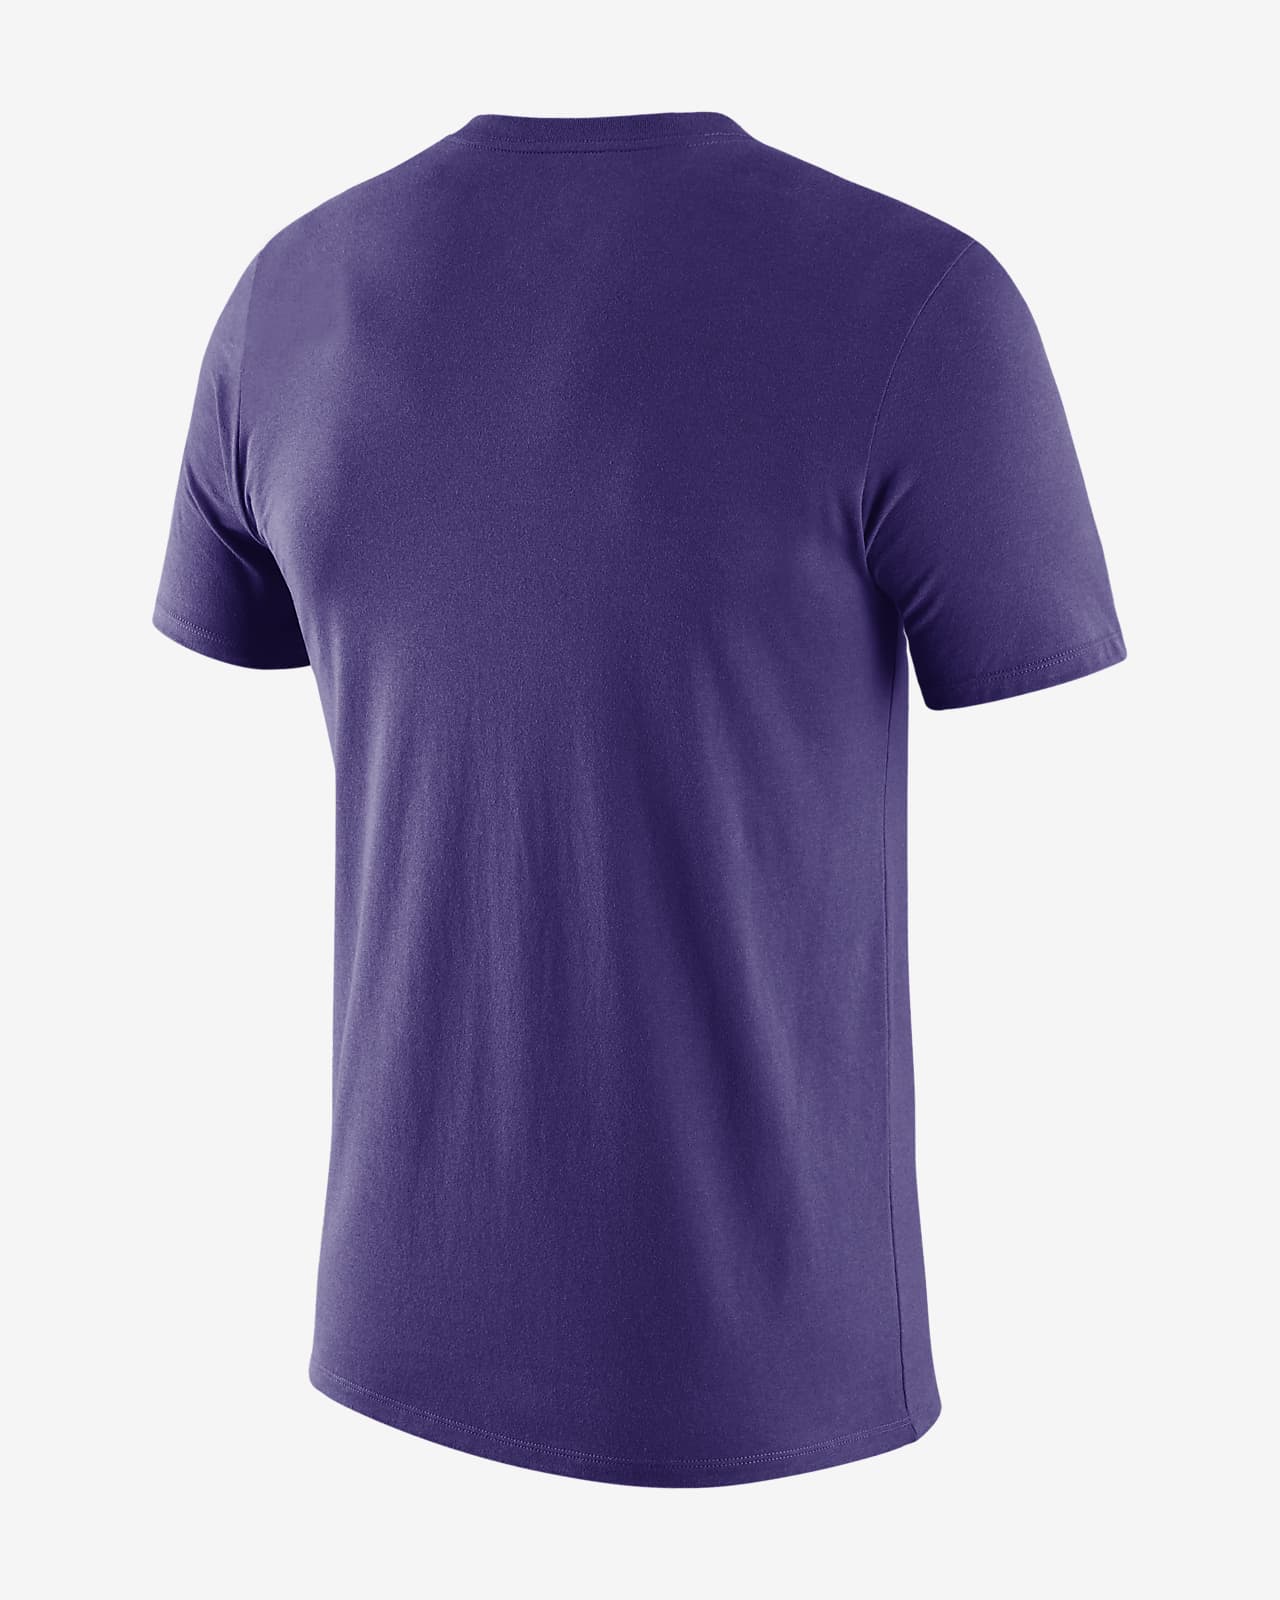 purple nike dri fit shirt